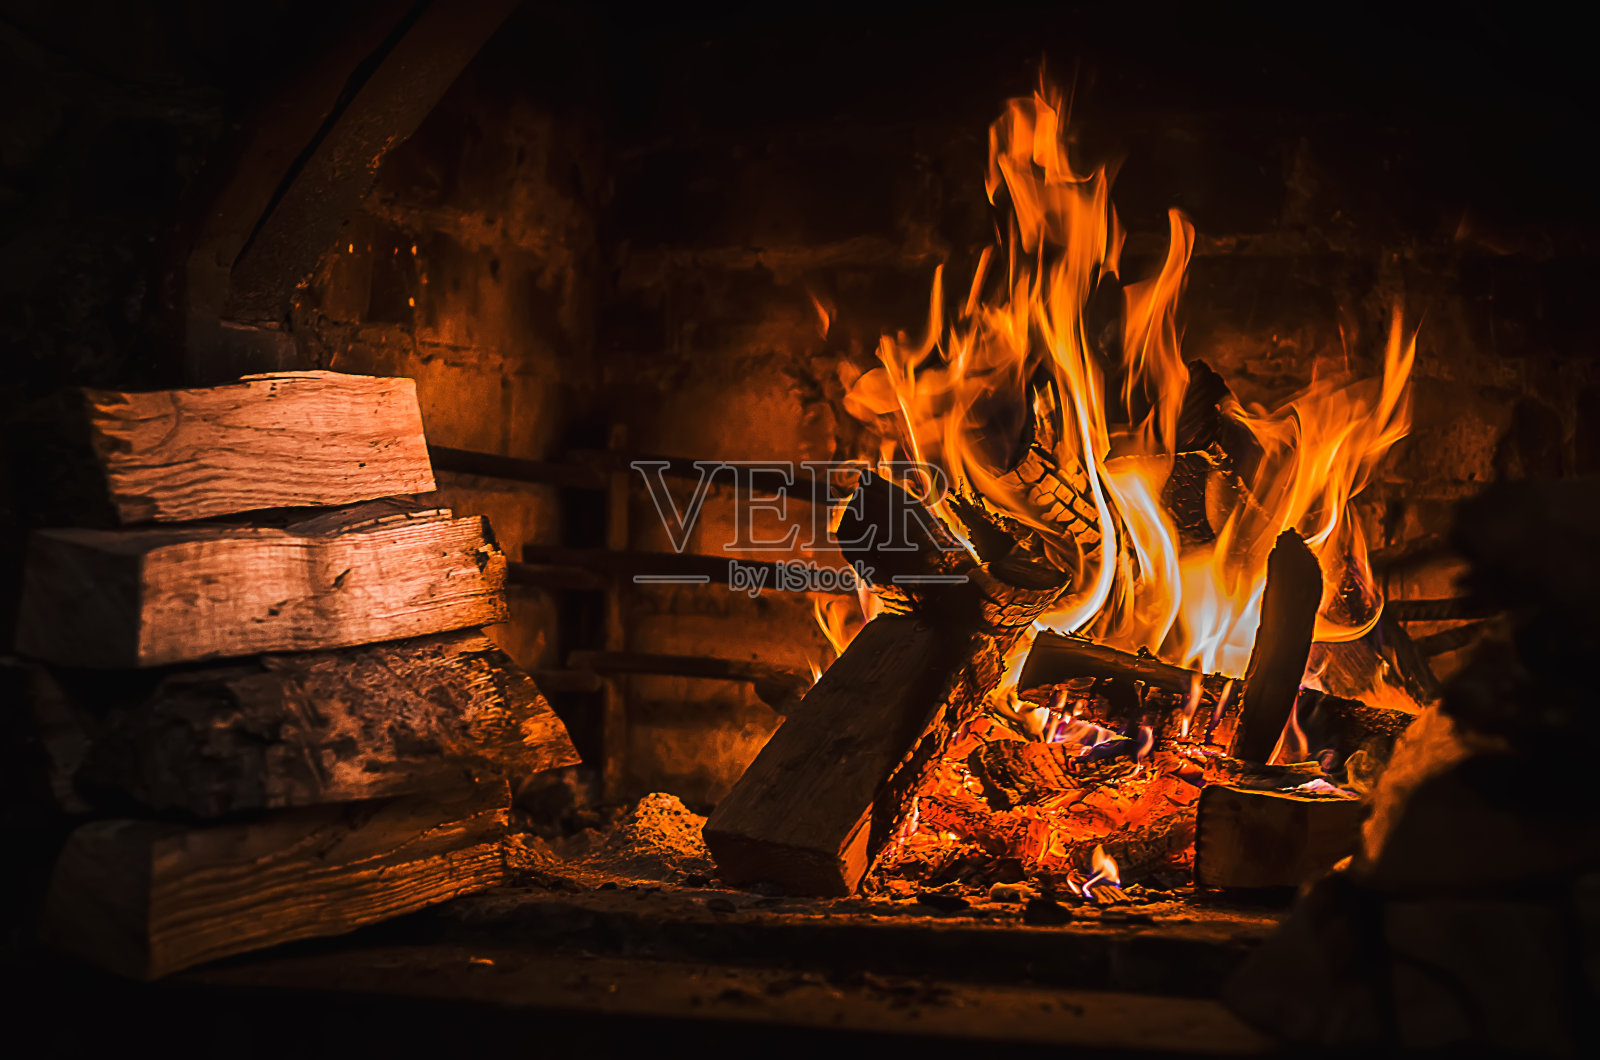 在开放式壁炉中燃烧木制燃料(柴火)照片摄影图片